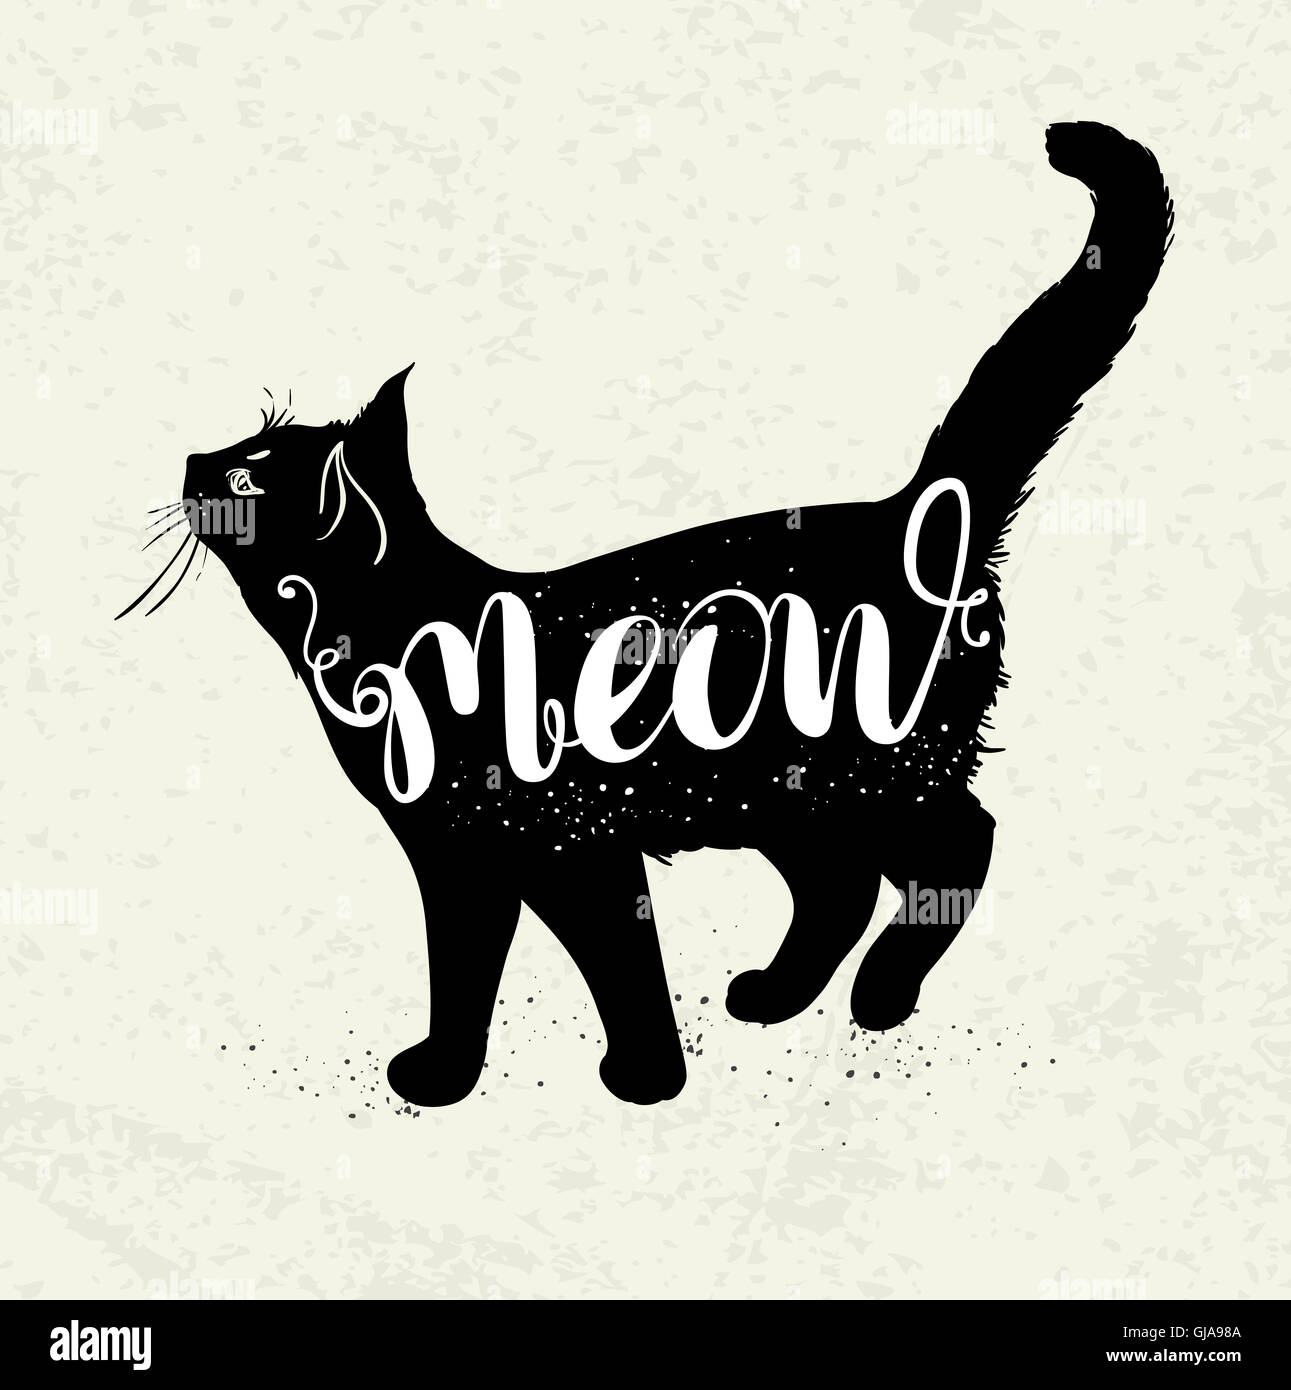 Fondo con gato negro y rotulación 'Meow'. Foto de stock